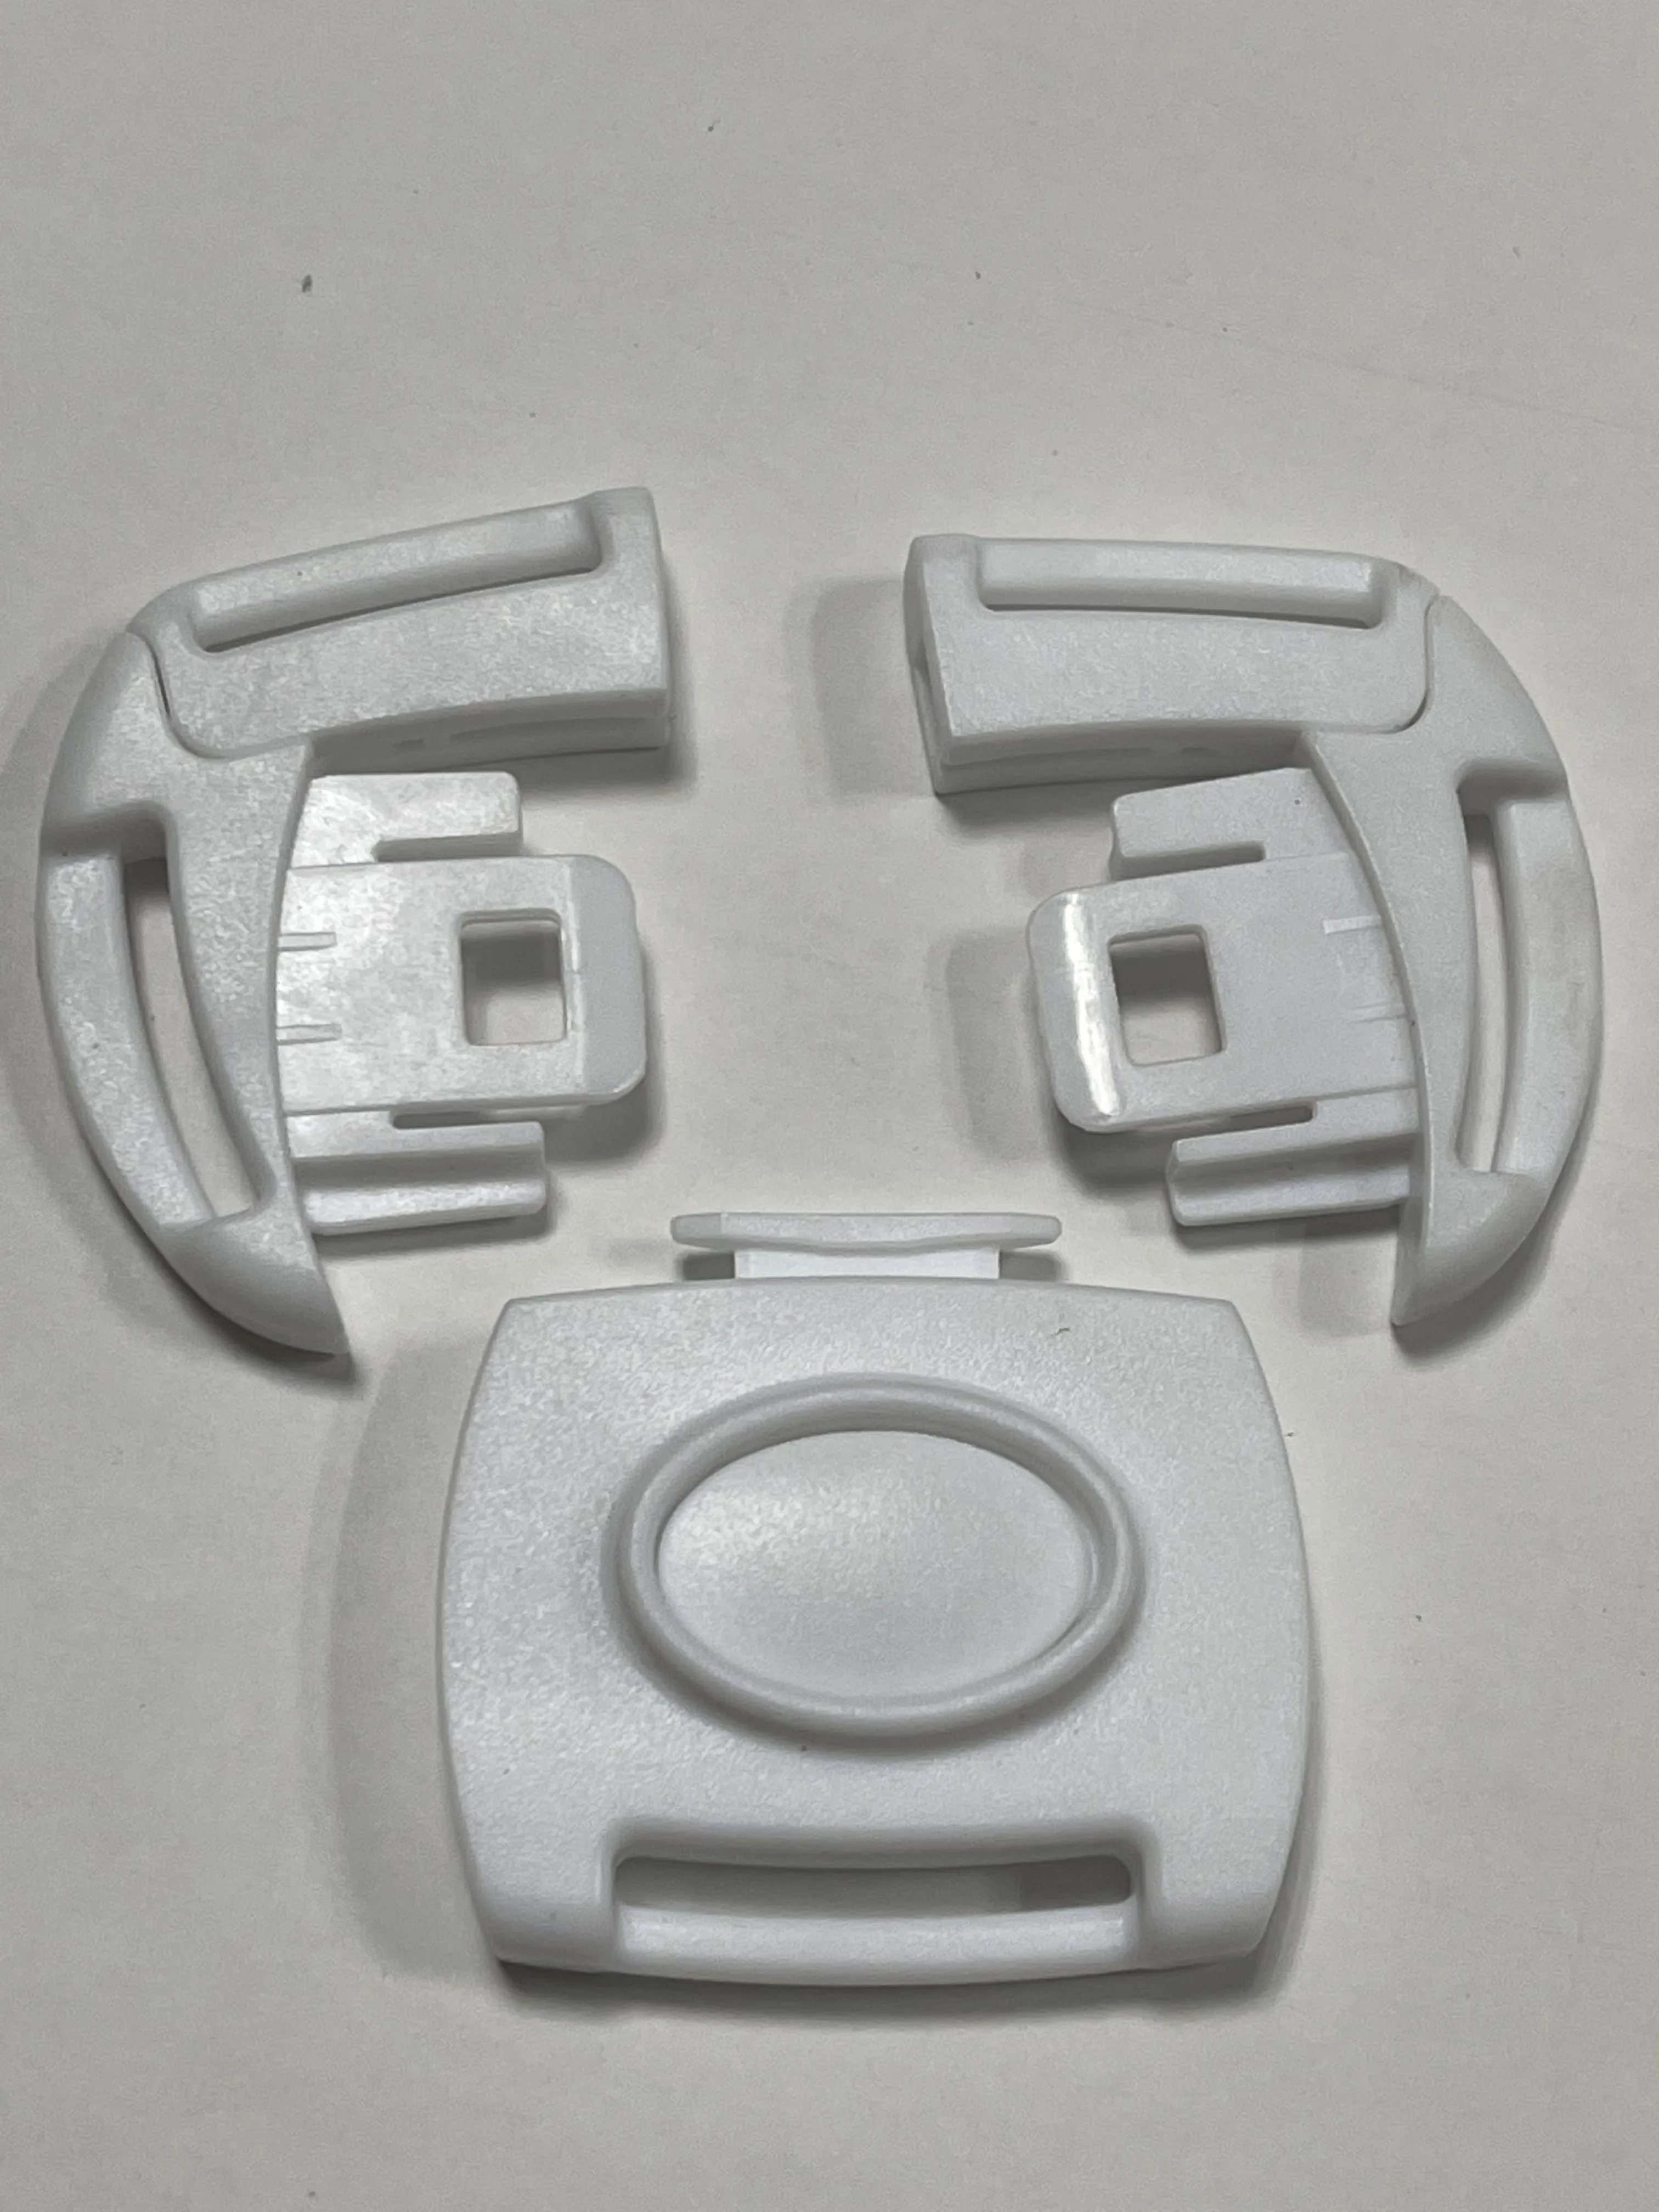 AINOMI-portabebés con hebillas de 5 puntos, pieza de repuesto para silla alta, cinturón de seguridad, arnés de sujeción